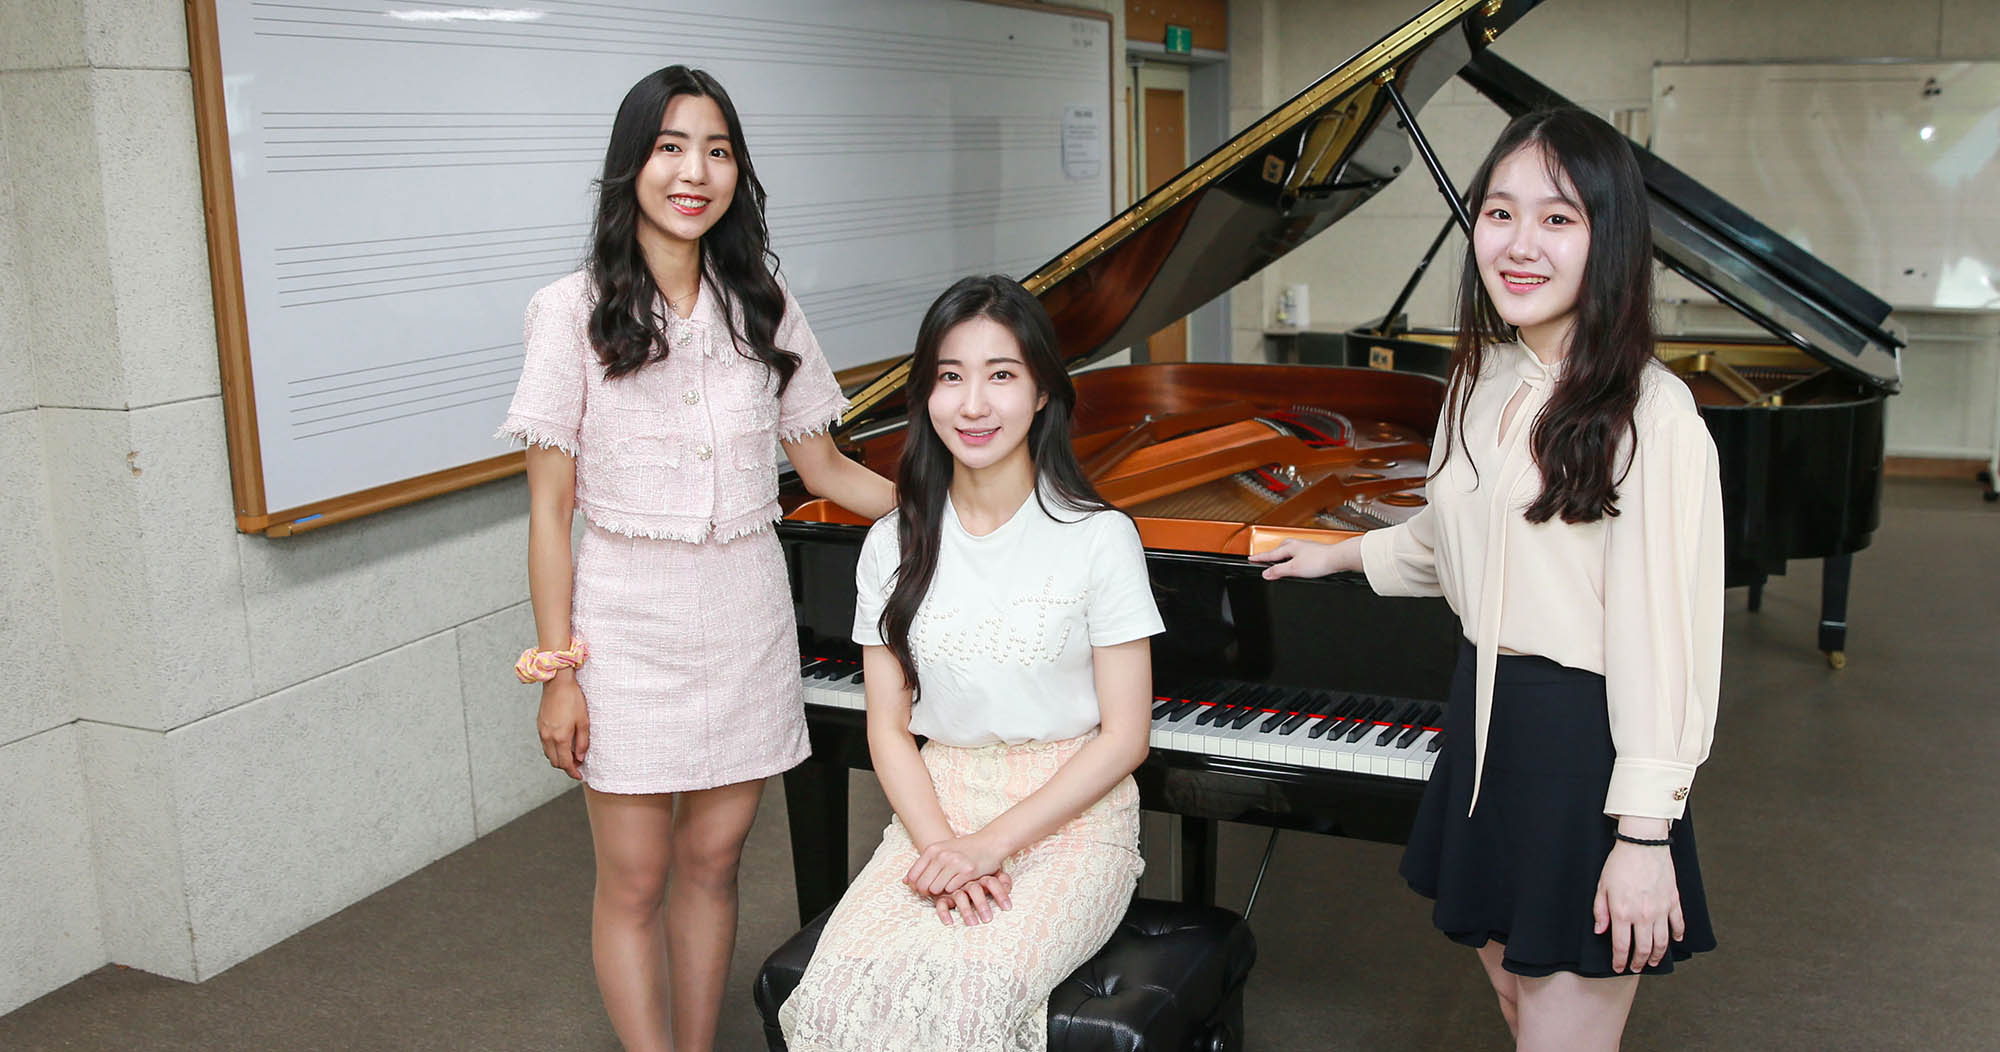 피아노과 학생들, 문화예술교육사 프로그램 공모 선정